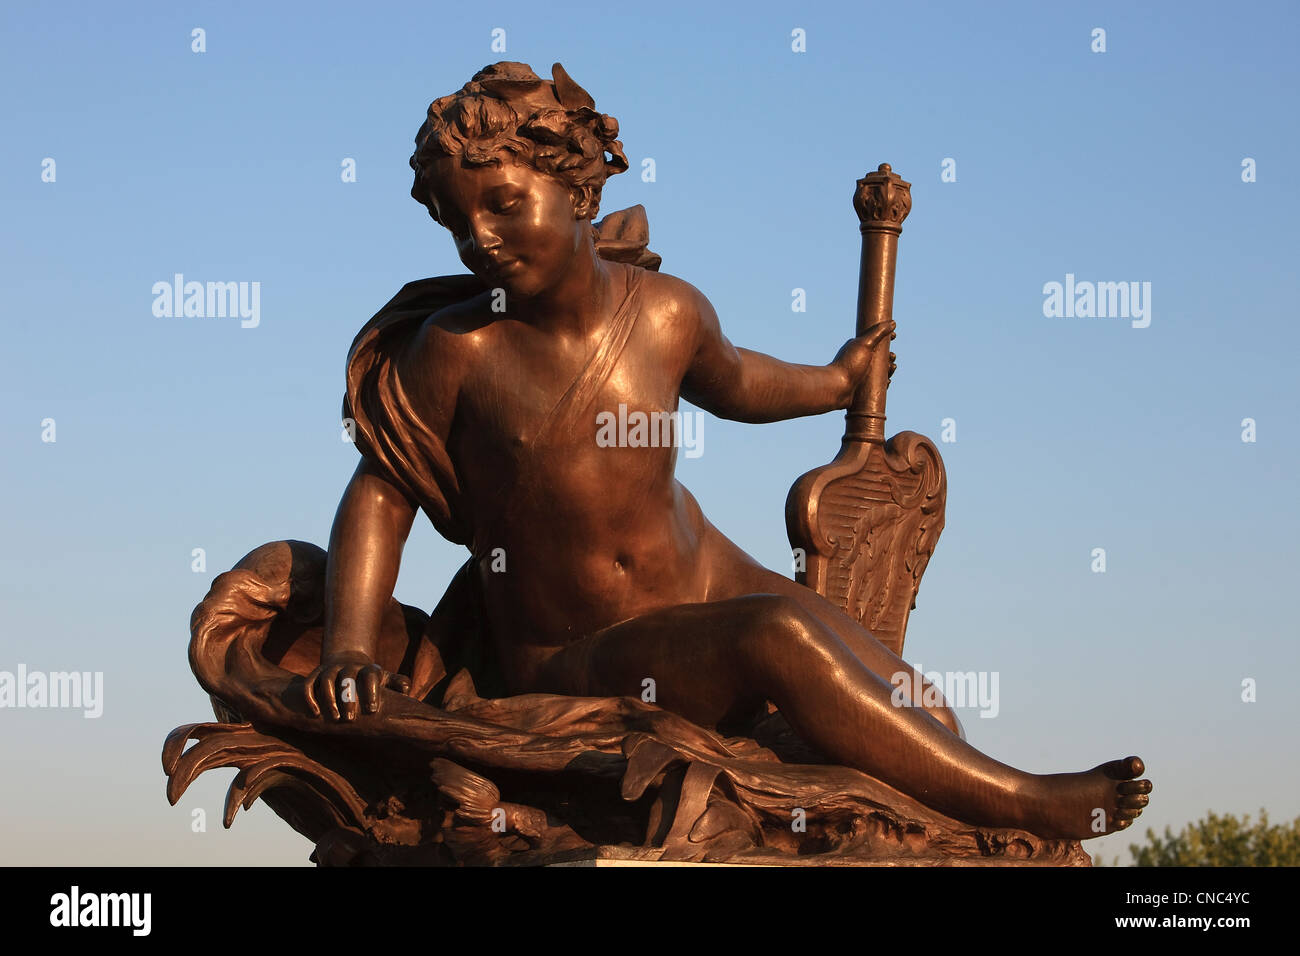 France, Paris, pont Alexandre III, detail of a sculpture, Les Nereides by Andre Massoule Stock Photo